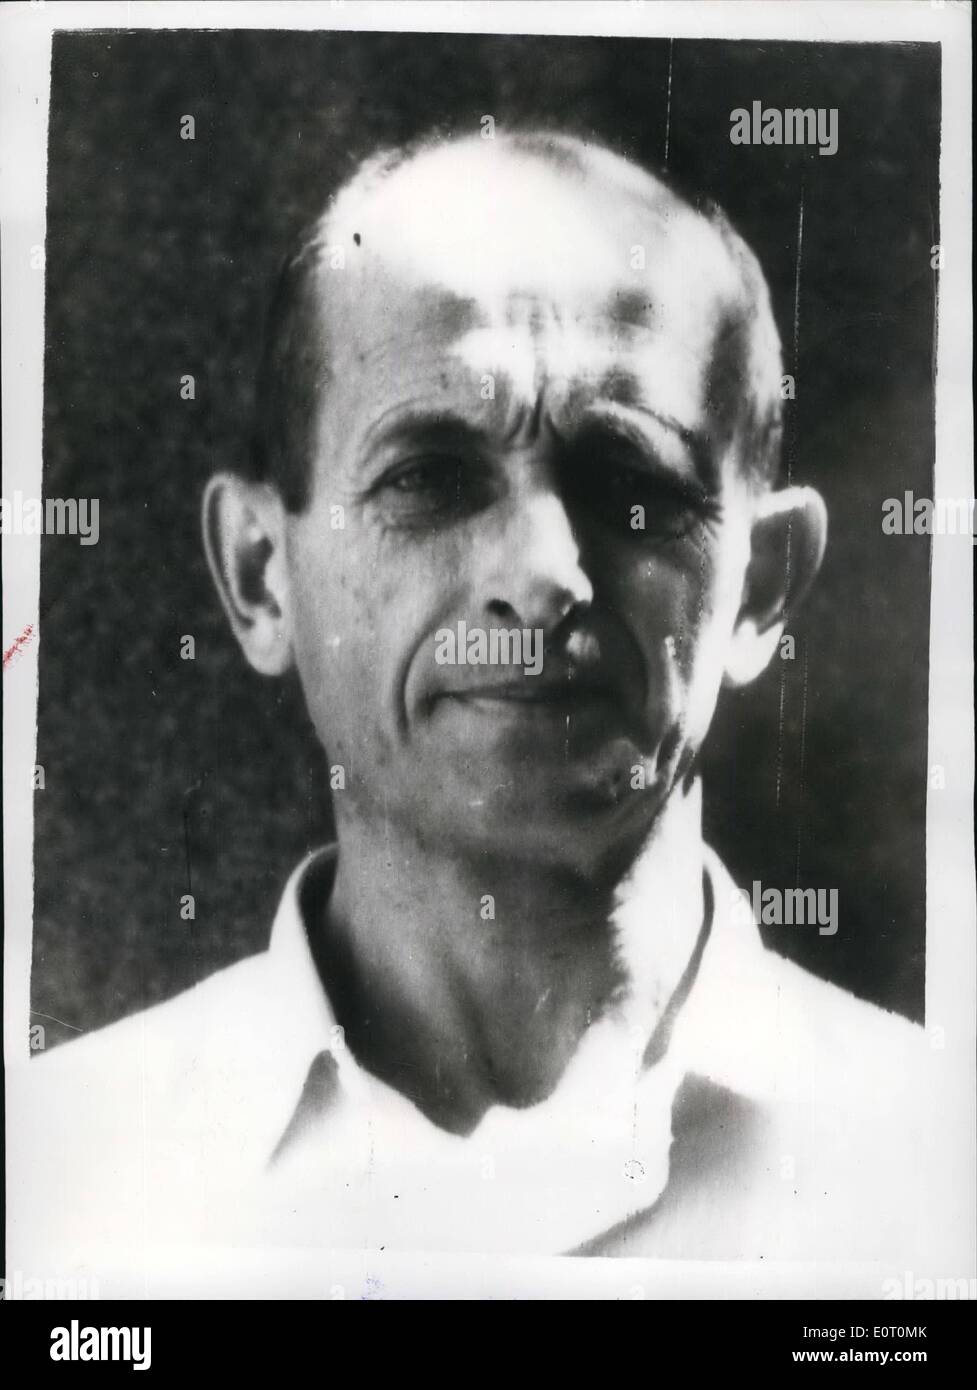 6. Juni 1960 - erste Porträt von Adolf Eichmann seit Gefangennahme durch israelische Geheimdienst-Agenten: Dies ist das erste Porträt von Adolf Eichmann ehemalige Nazi-SS-Oberst behauptete, der weltweit berüchtigtsten Mörder hat heute von seinen Entführern - israelischen Geheimdienst Männer zu sein. Ihm wird vorgeworfen, die schreckliche effiziente System zur Mas Massenvernichtung der Juden zwischen den Jahren 1938-1945 von Gaskammer und anderer Methoden zu organisieren. Eichmann, der jetzt 53 in Argentinien von Geheimagenten der israelischen Regierung nach Monaten sorgfältiger Untersuchung verhaftet wurde. Stockfoto